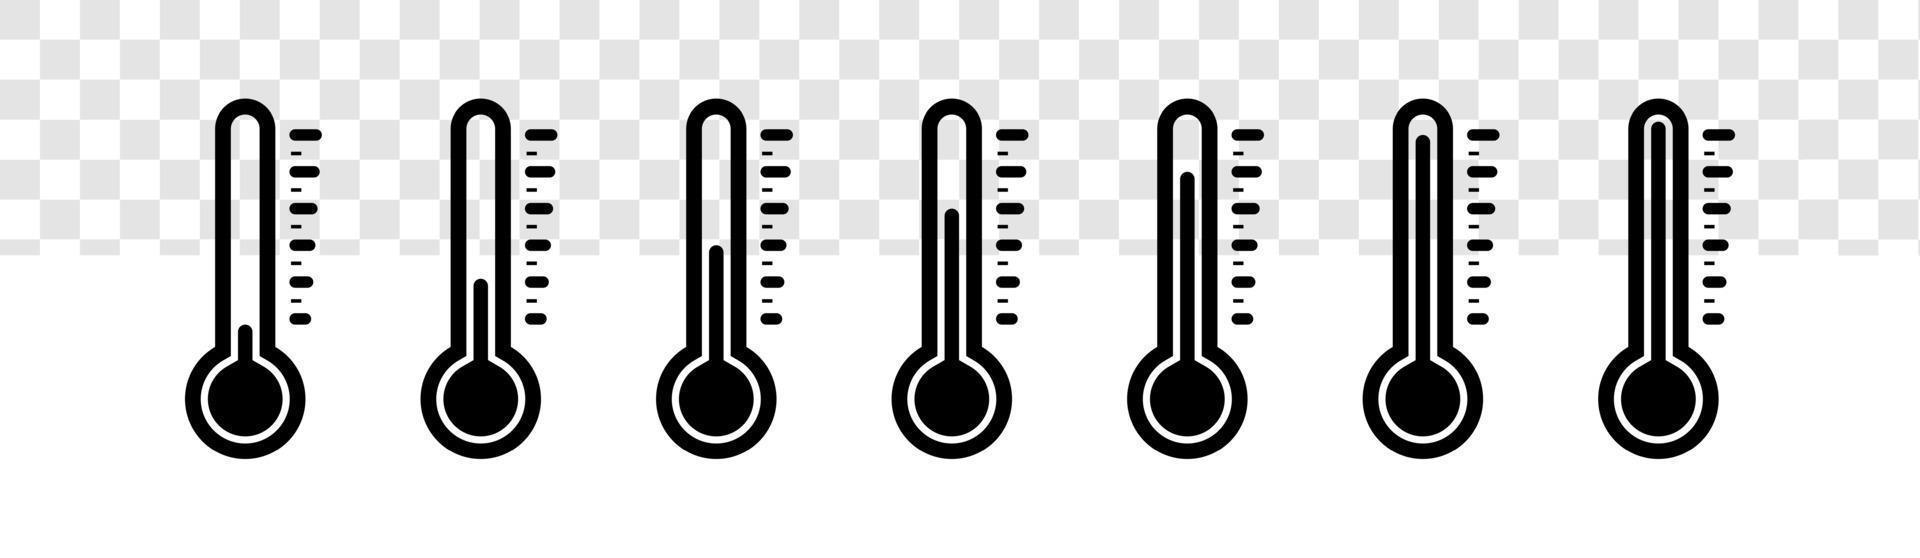 jeu d'icônes de température isolé sur fond transparent. symbole de thermomètre avec la couleur noire. vecteur